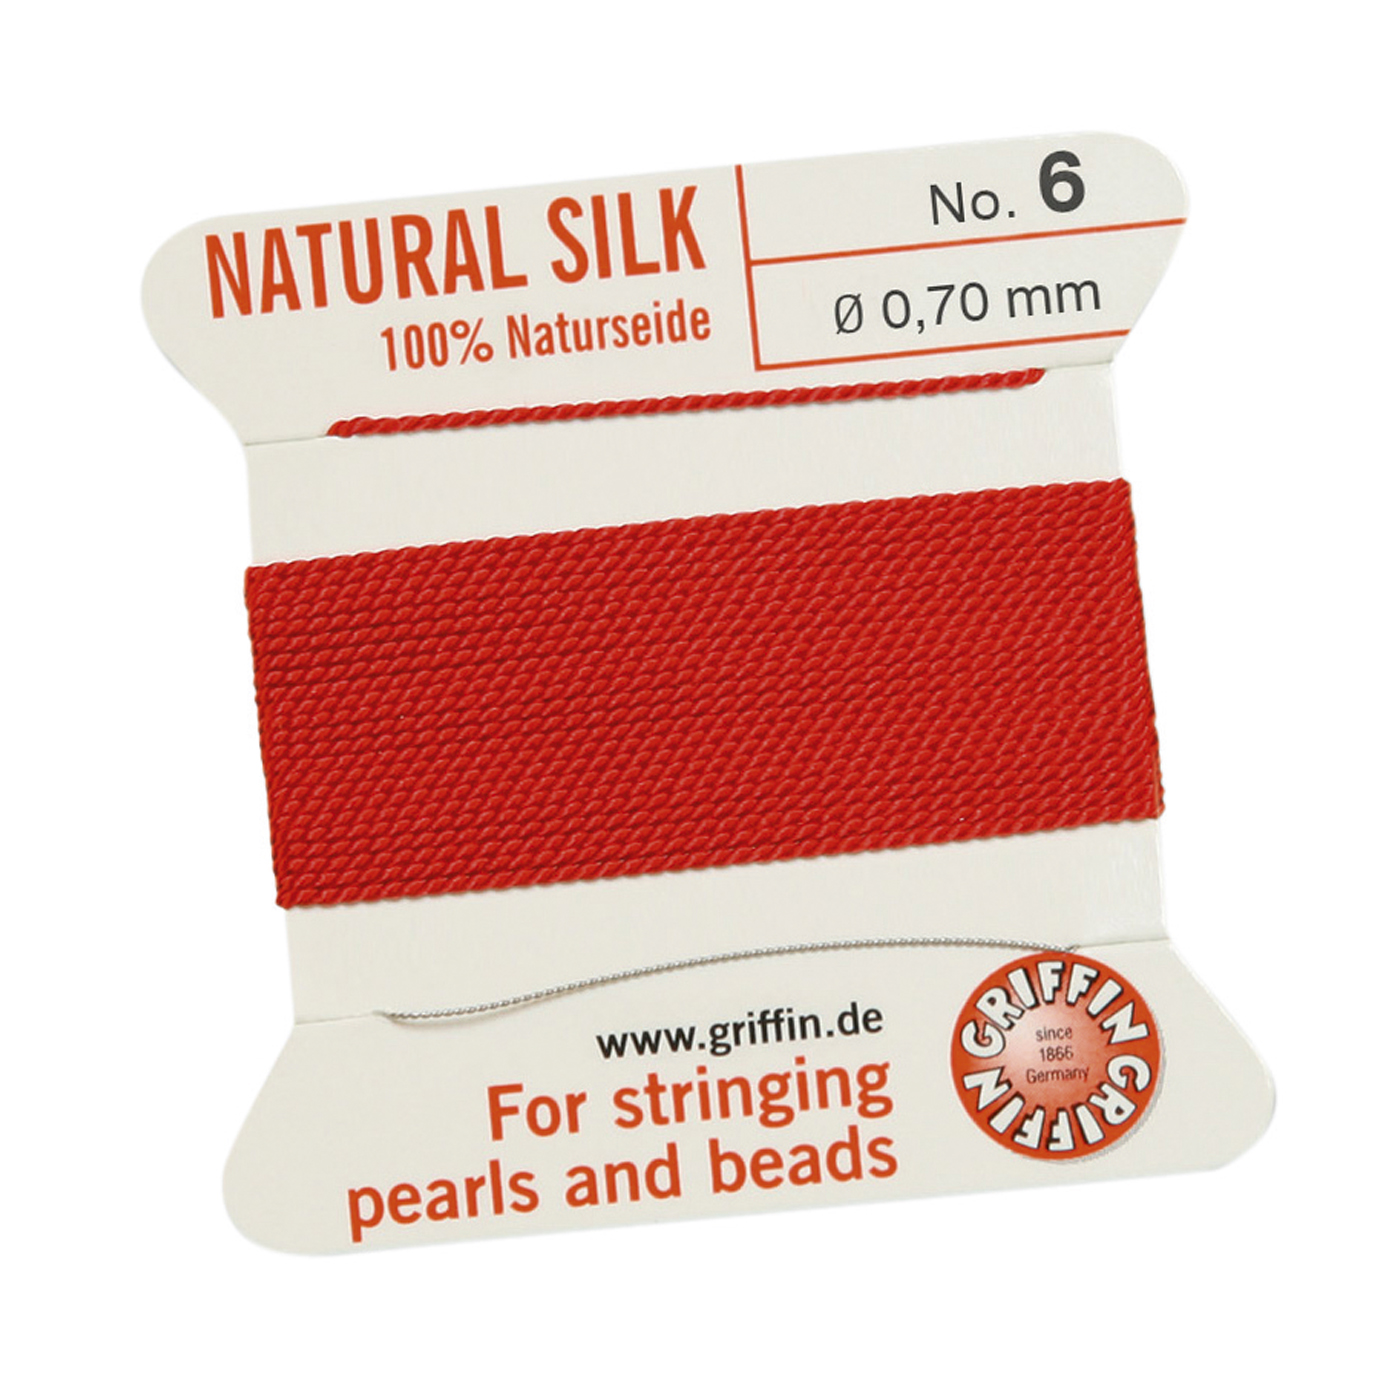 Bead Cord 100% Natural Silk, Red, No. 6 - 2 m